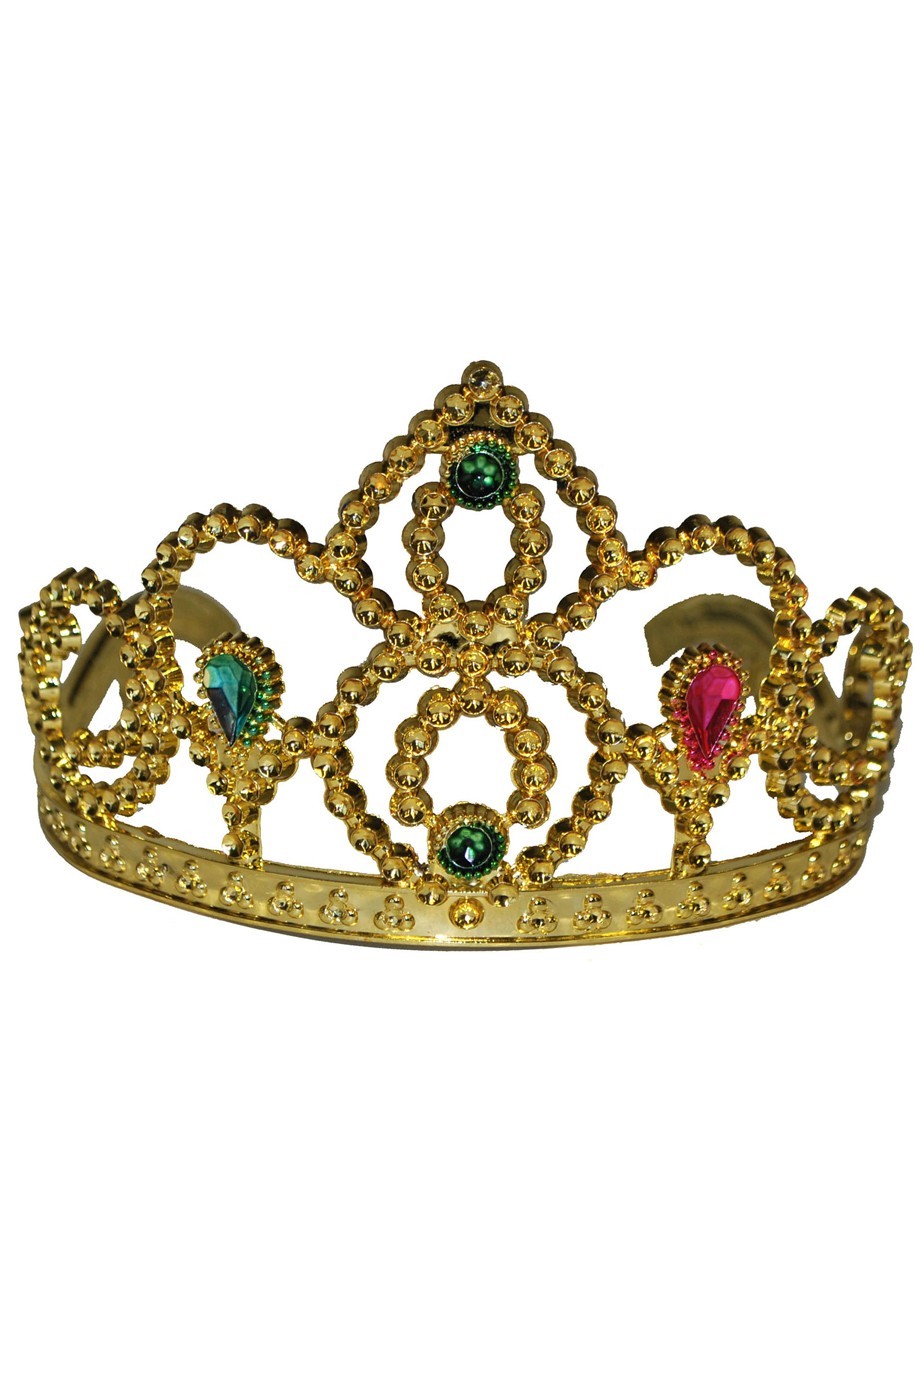 Corona in plastica a tiara con pettinini dorata o argentata con diadema